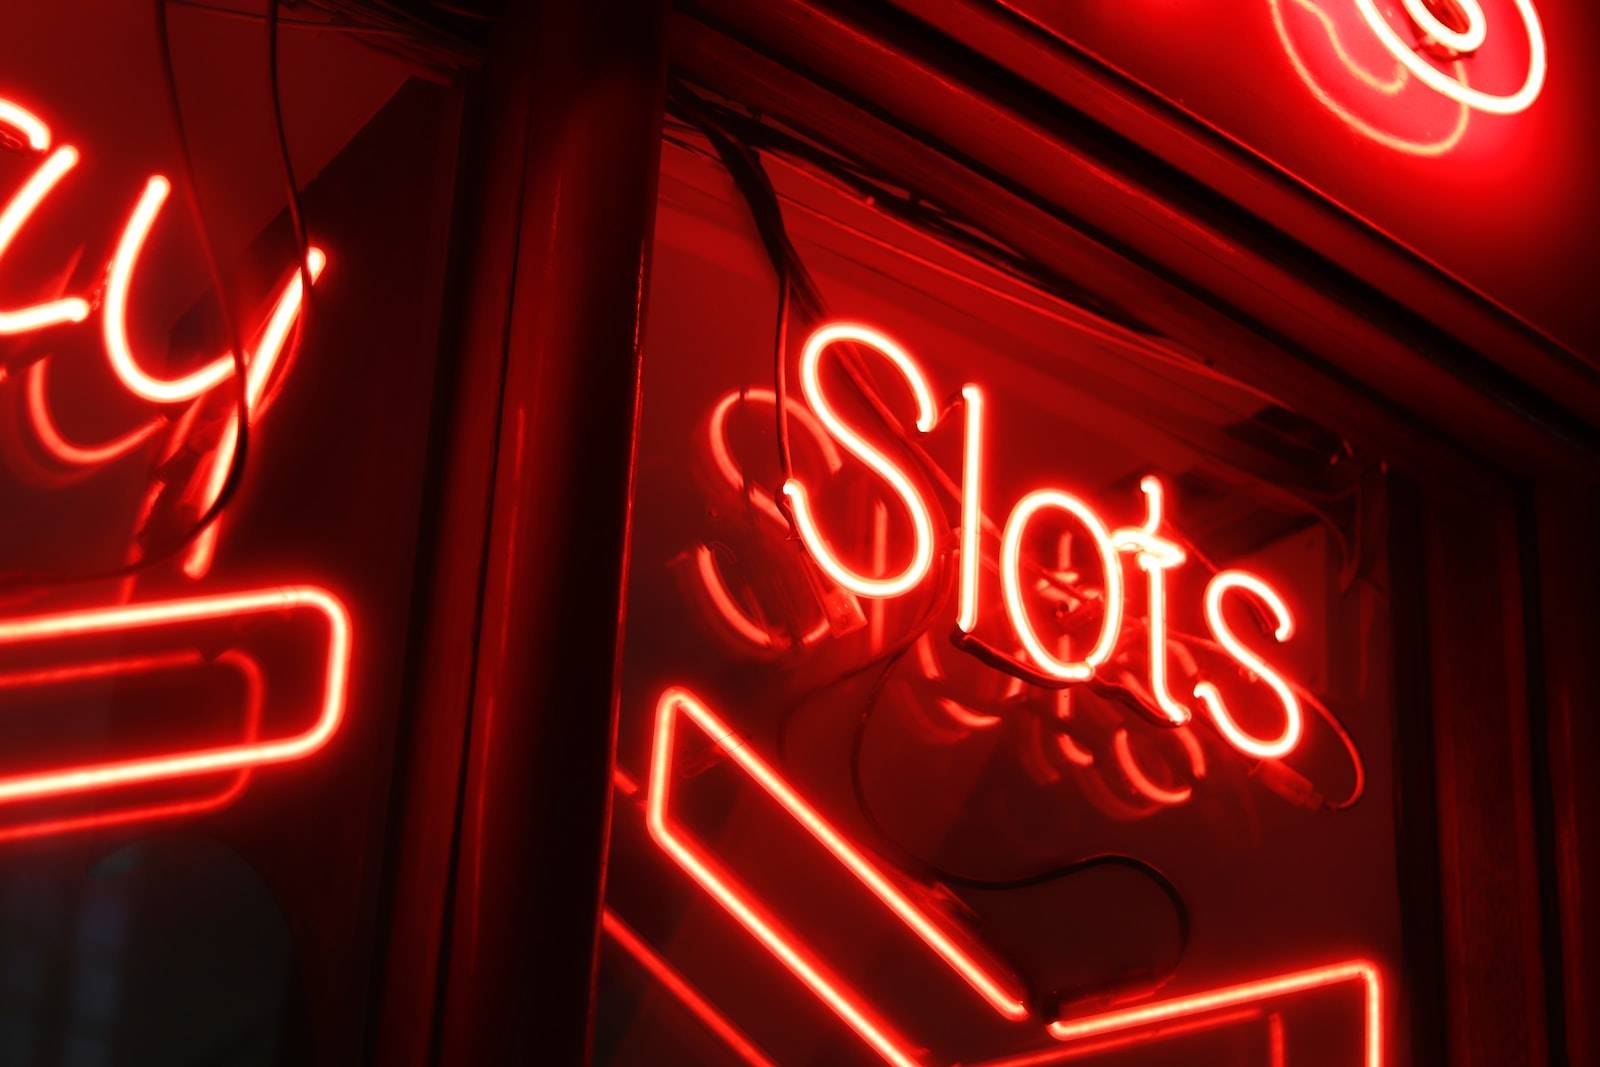 Slots sign